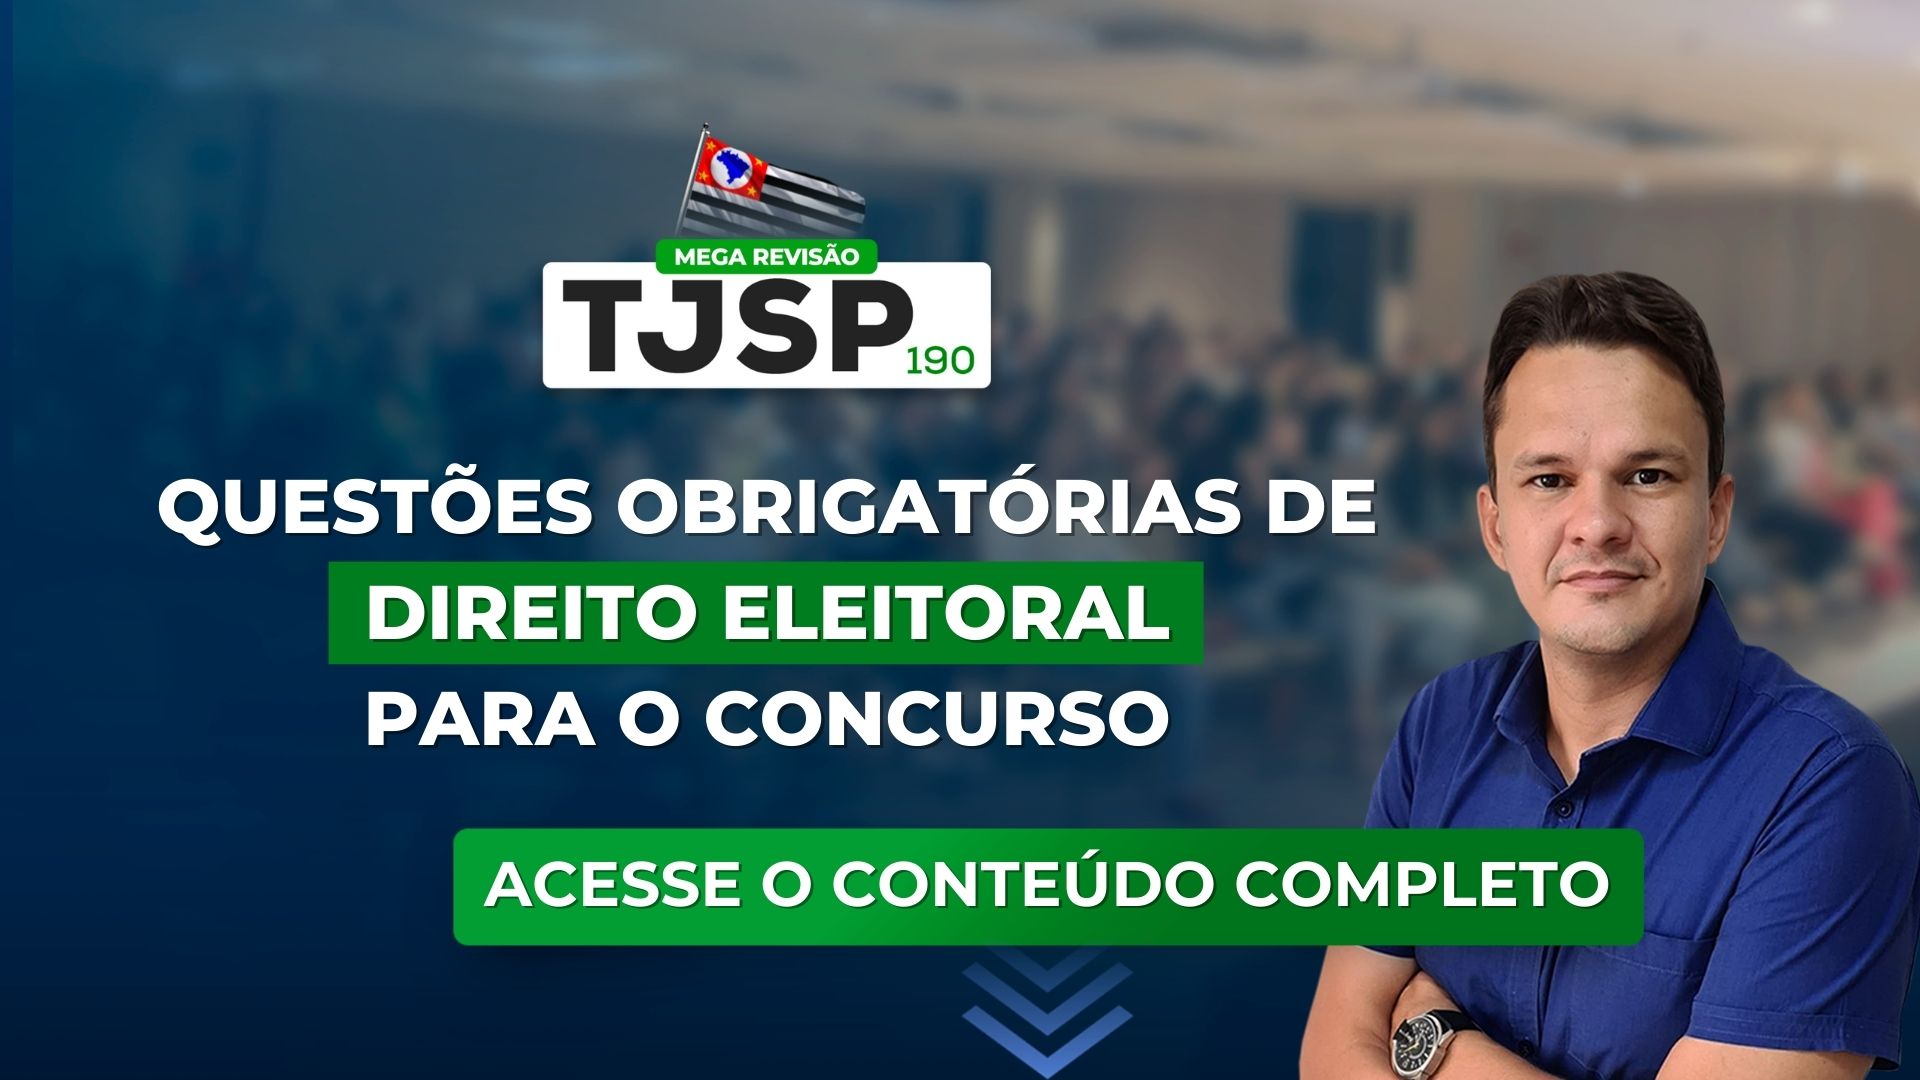 TJSP 190: Questões obrigatórias de Direito Eleitoral para o concurso